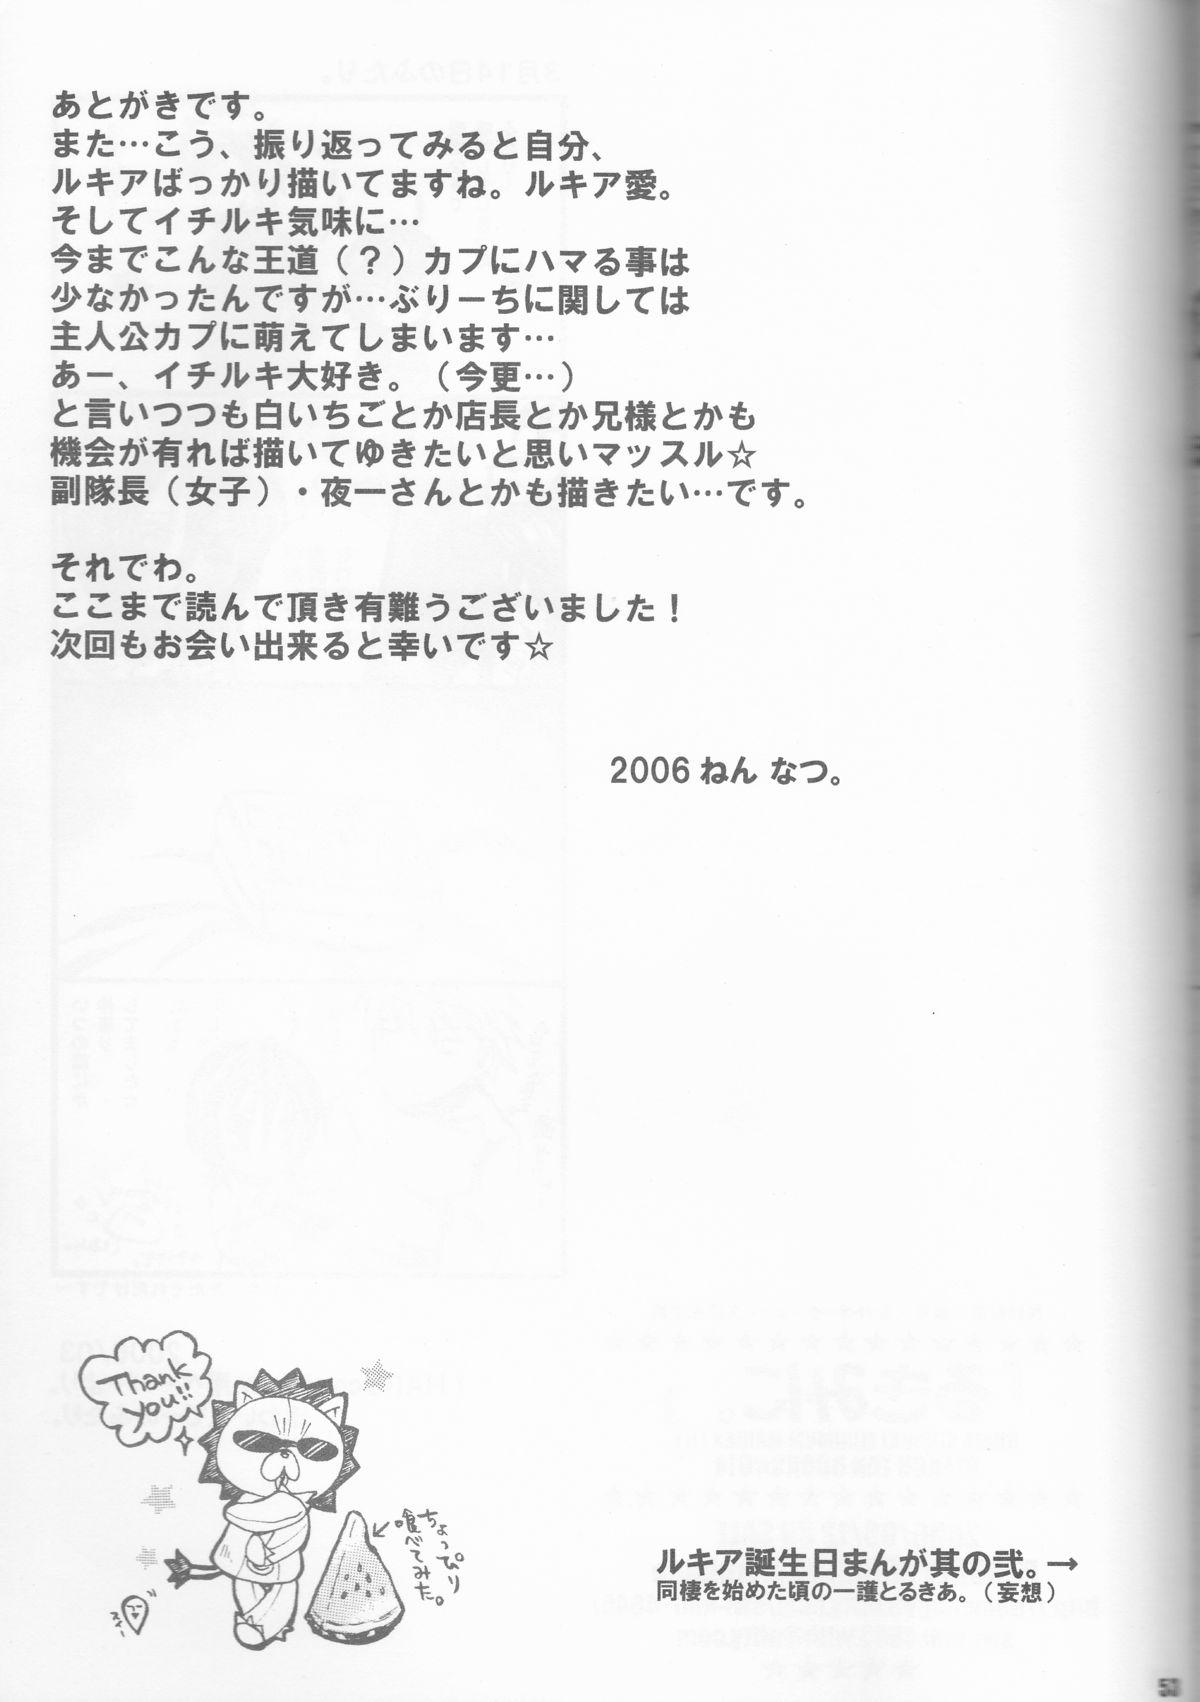 Corrida Rukia Kuchiki Minimum Maniax File - Bleach 18yo - Page 53